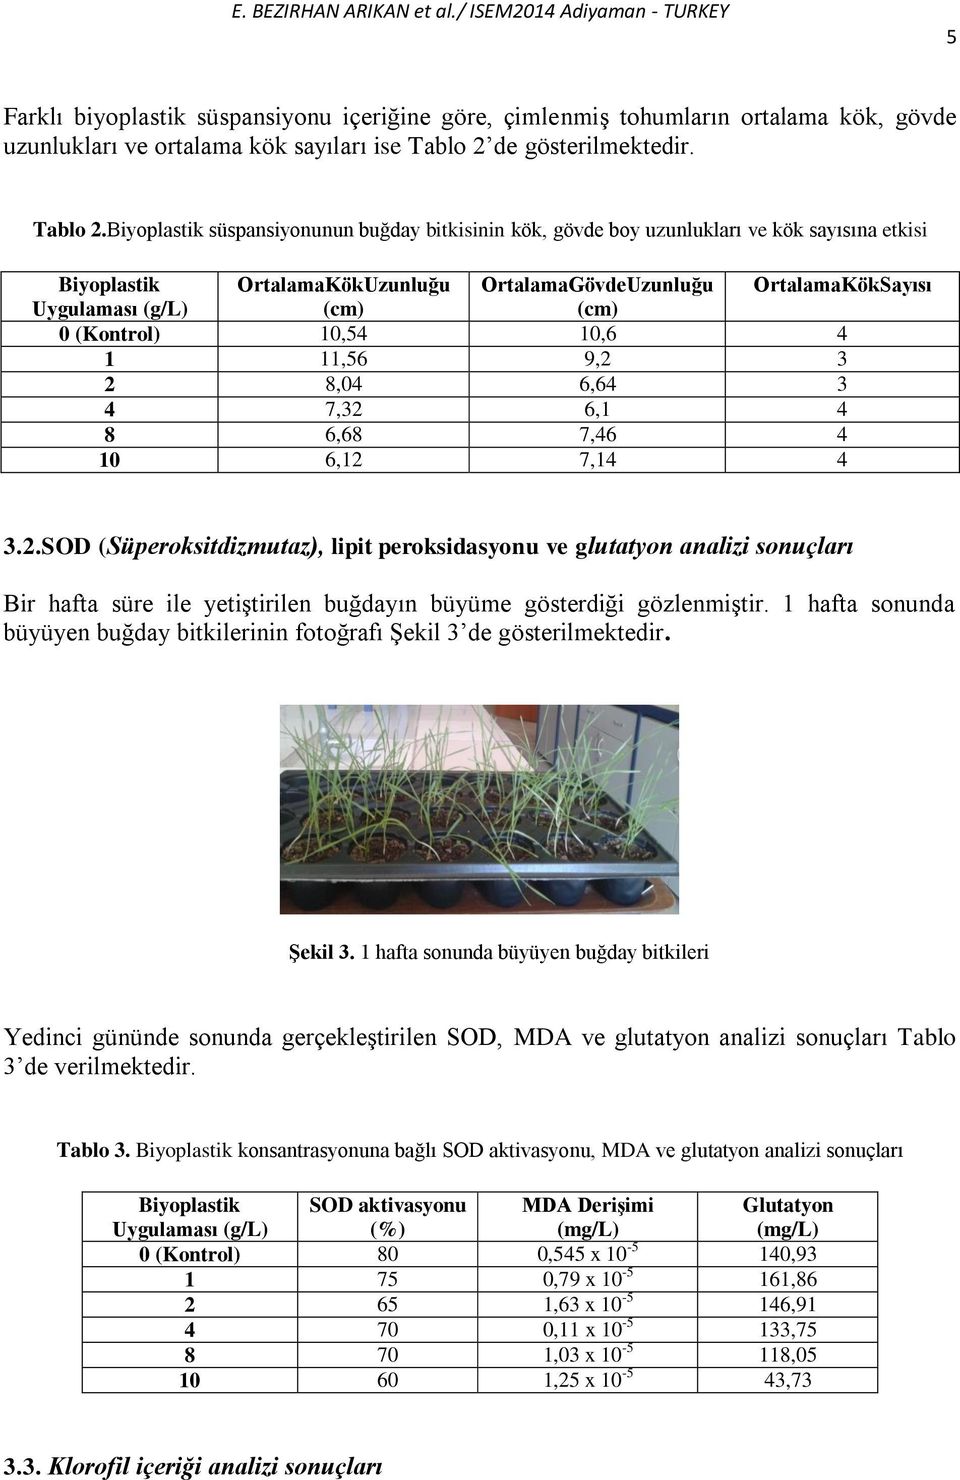 Biyoplastik süspansiyonunun buğday bitkisinin kök, gövde boy uzunlukları ve kök sayısına etkisi Biyoplastik OrtalamaKökUzunluğu OrtalamaGövdeUzunluğu OrtalamaKökSayısı Uygulaması (g/l) (cm) (cm) 0